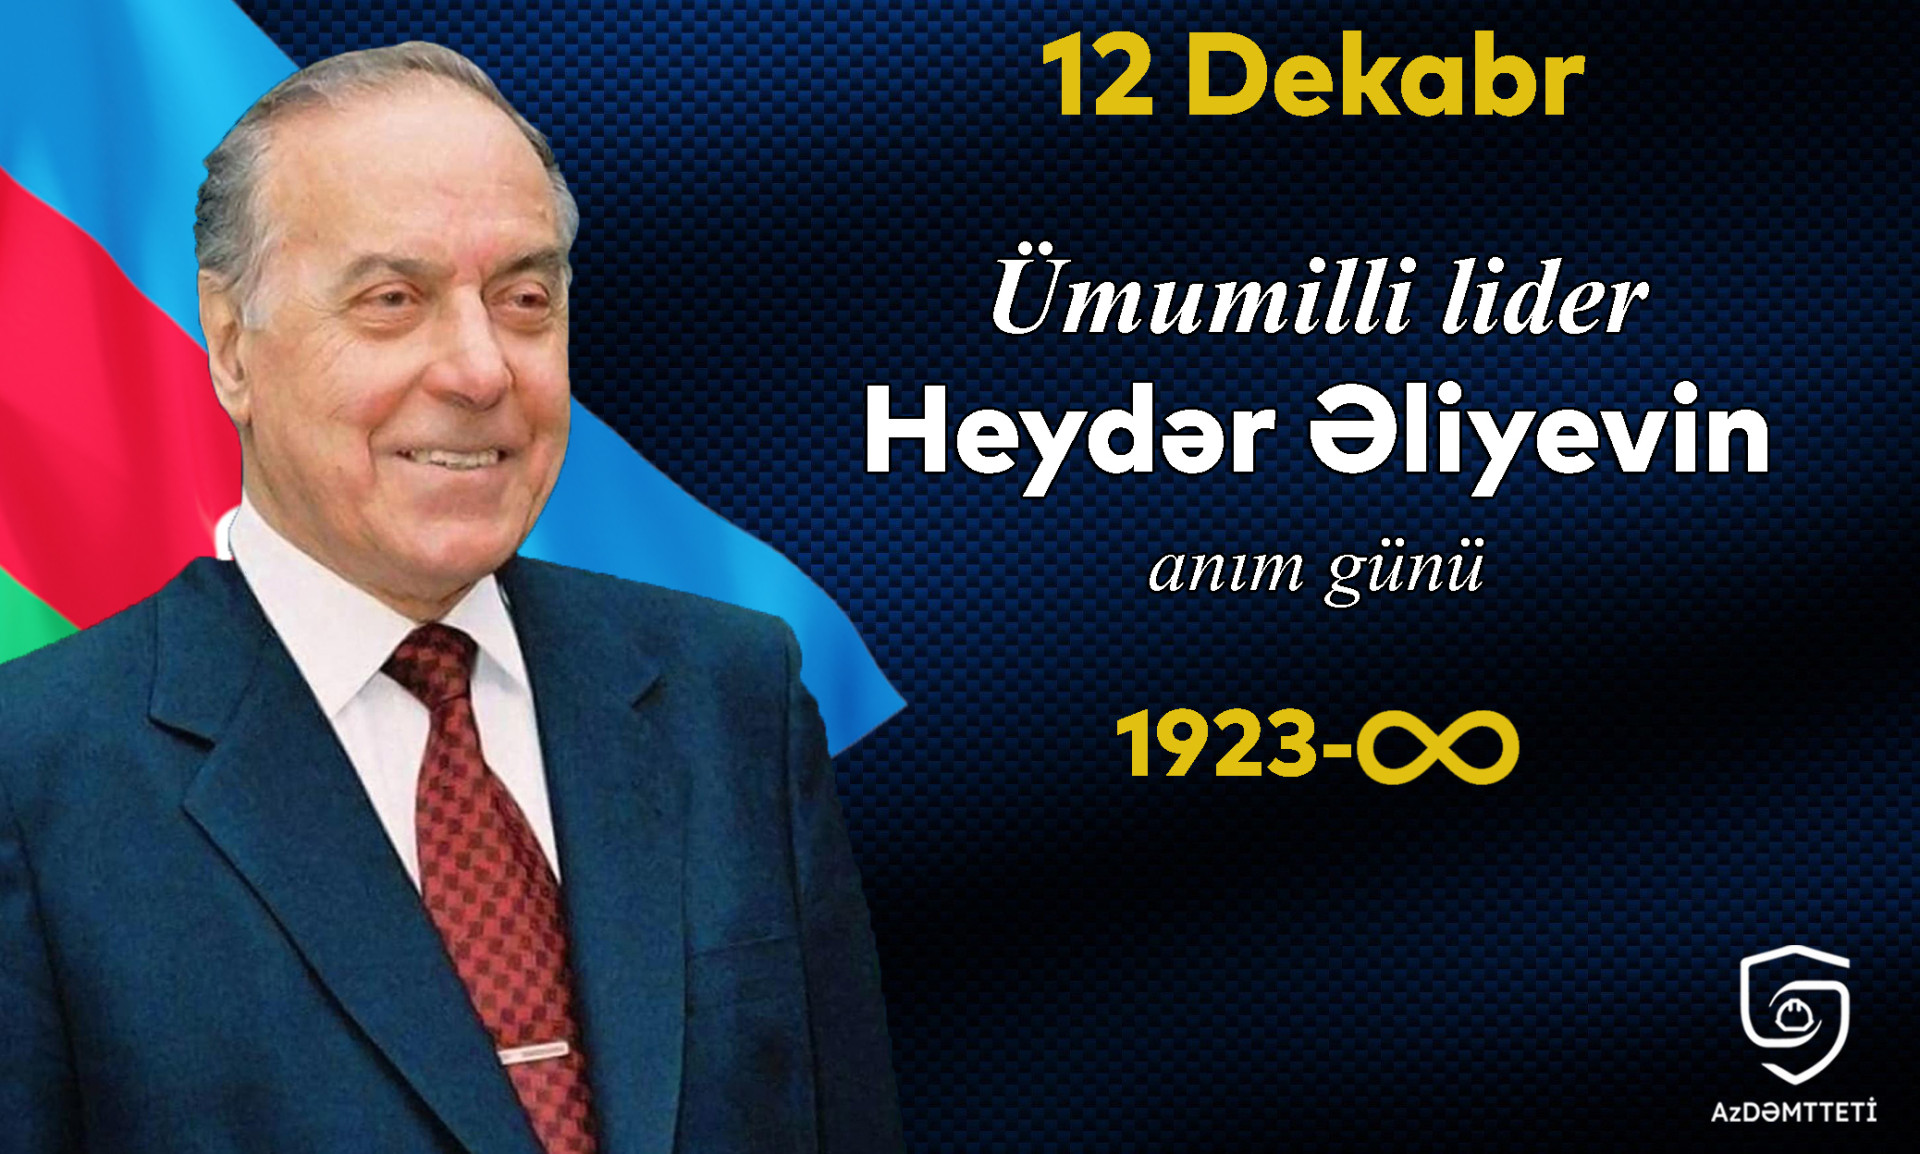 12 dekabr - Ümummilli lider Heydər Əliyevin anım günüdür